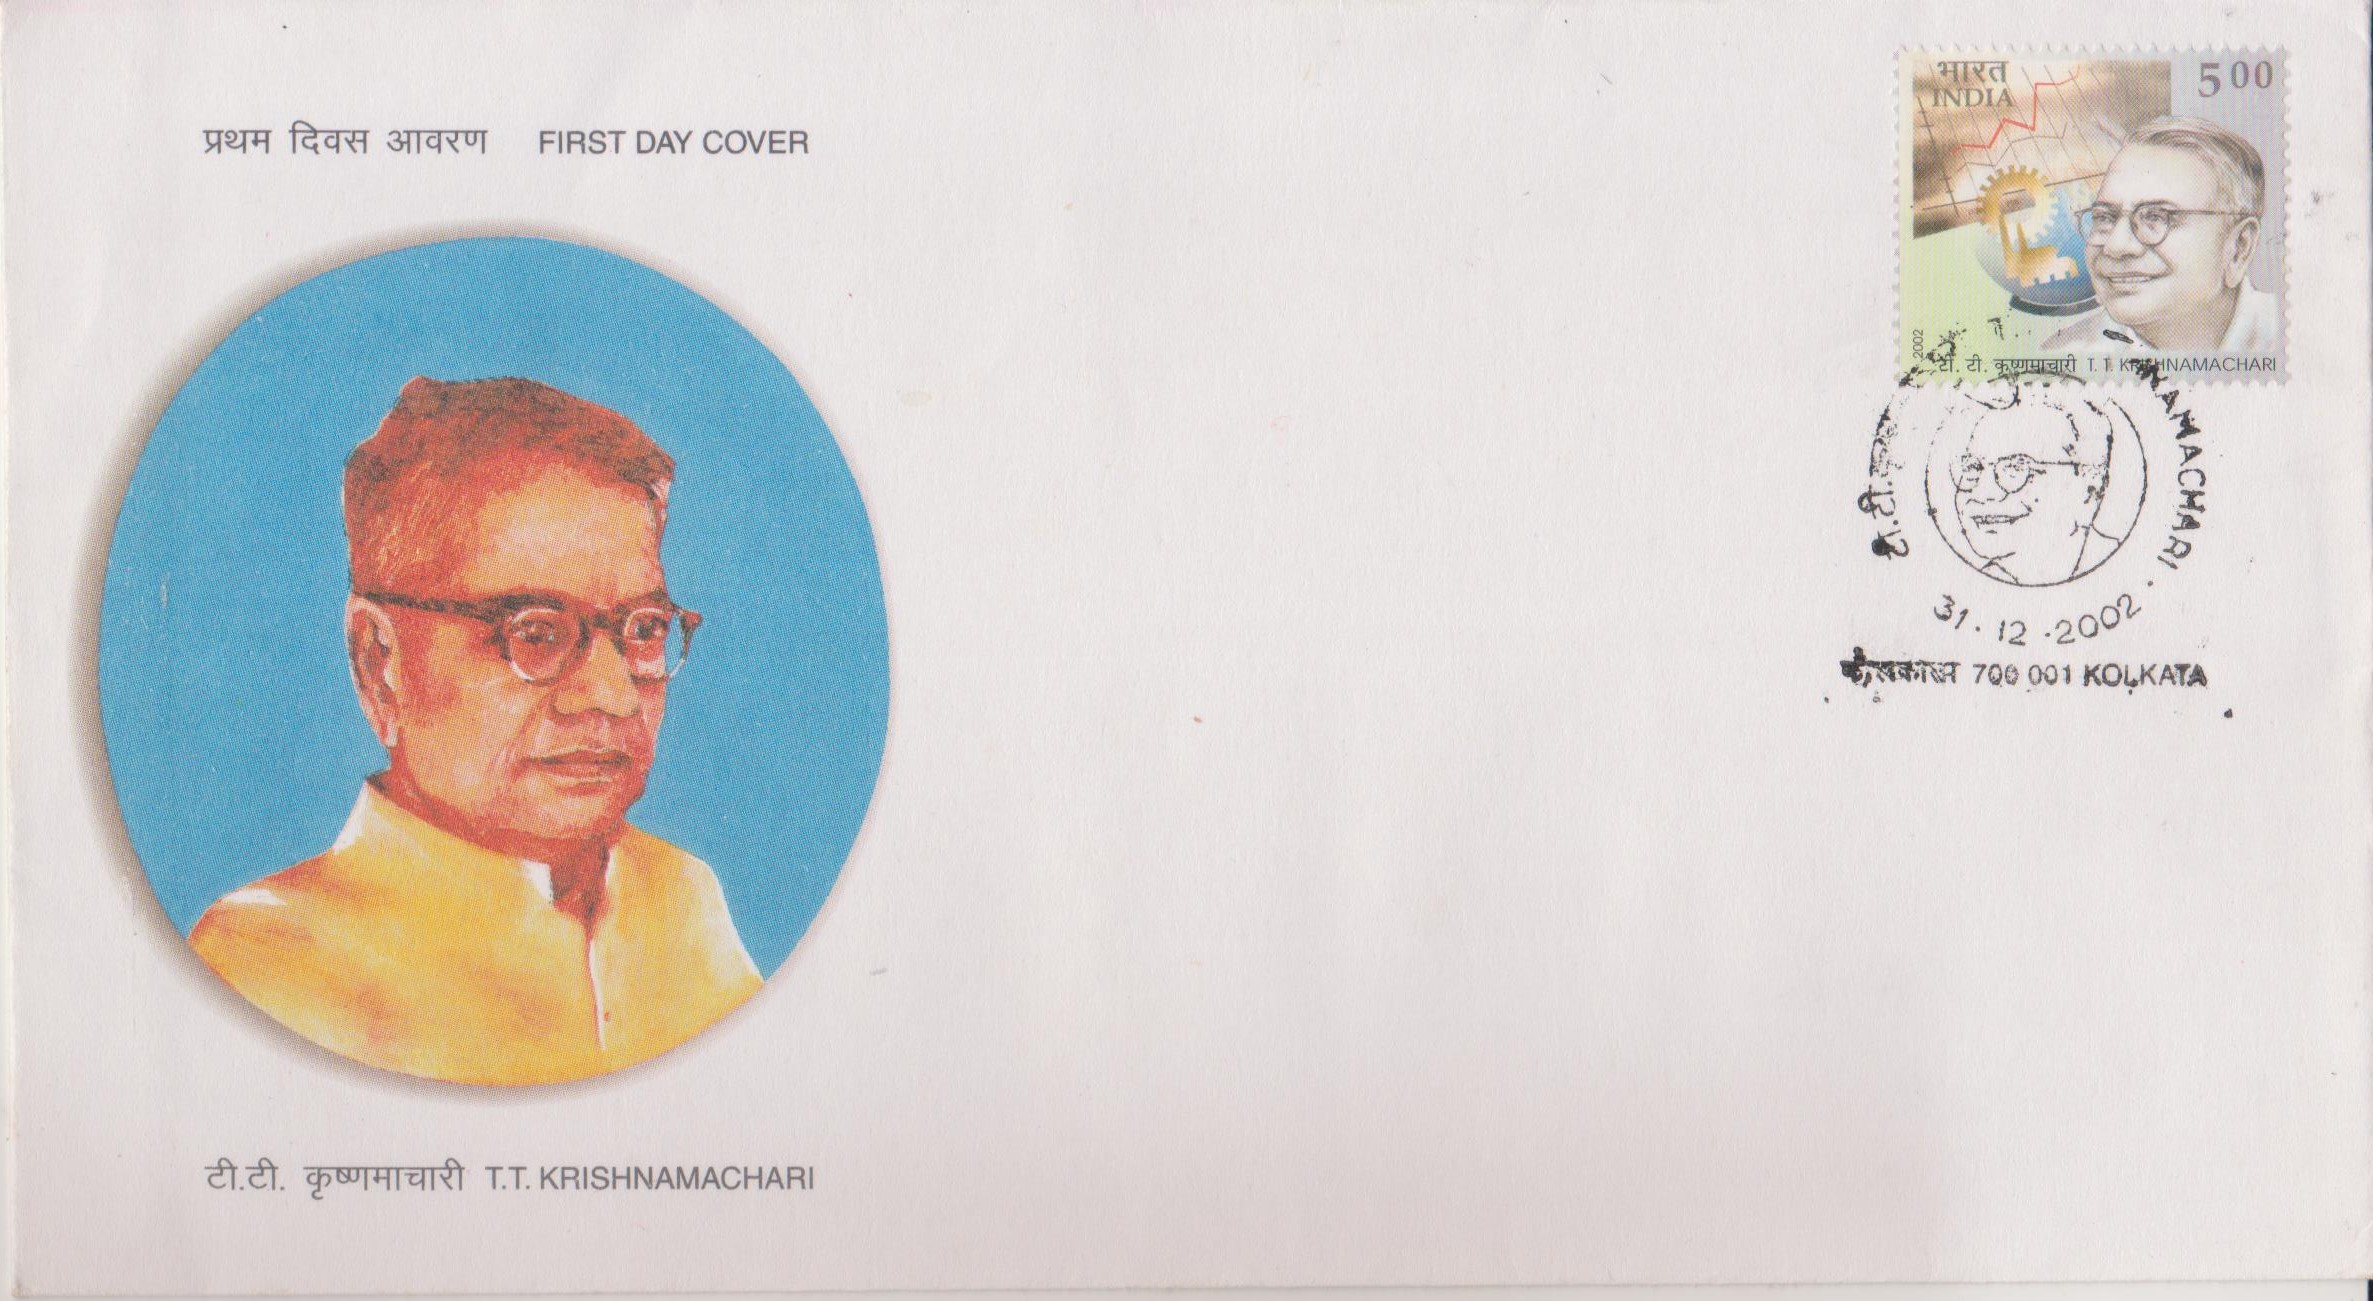 Tiruvellore Thattai Krishnamachari : TTK group